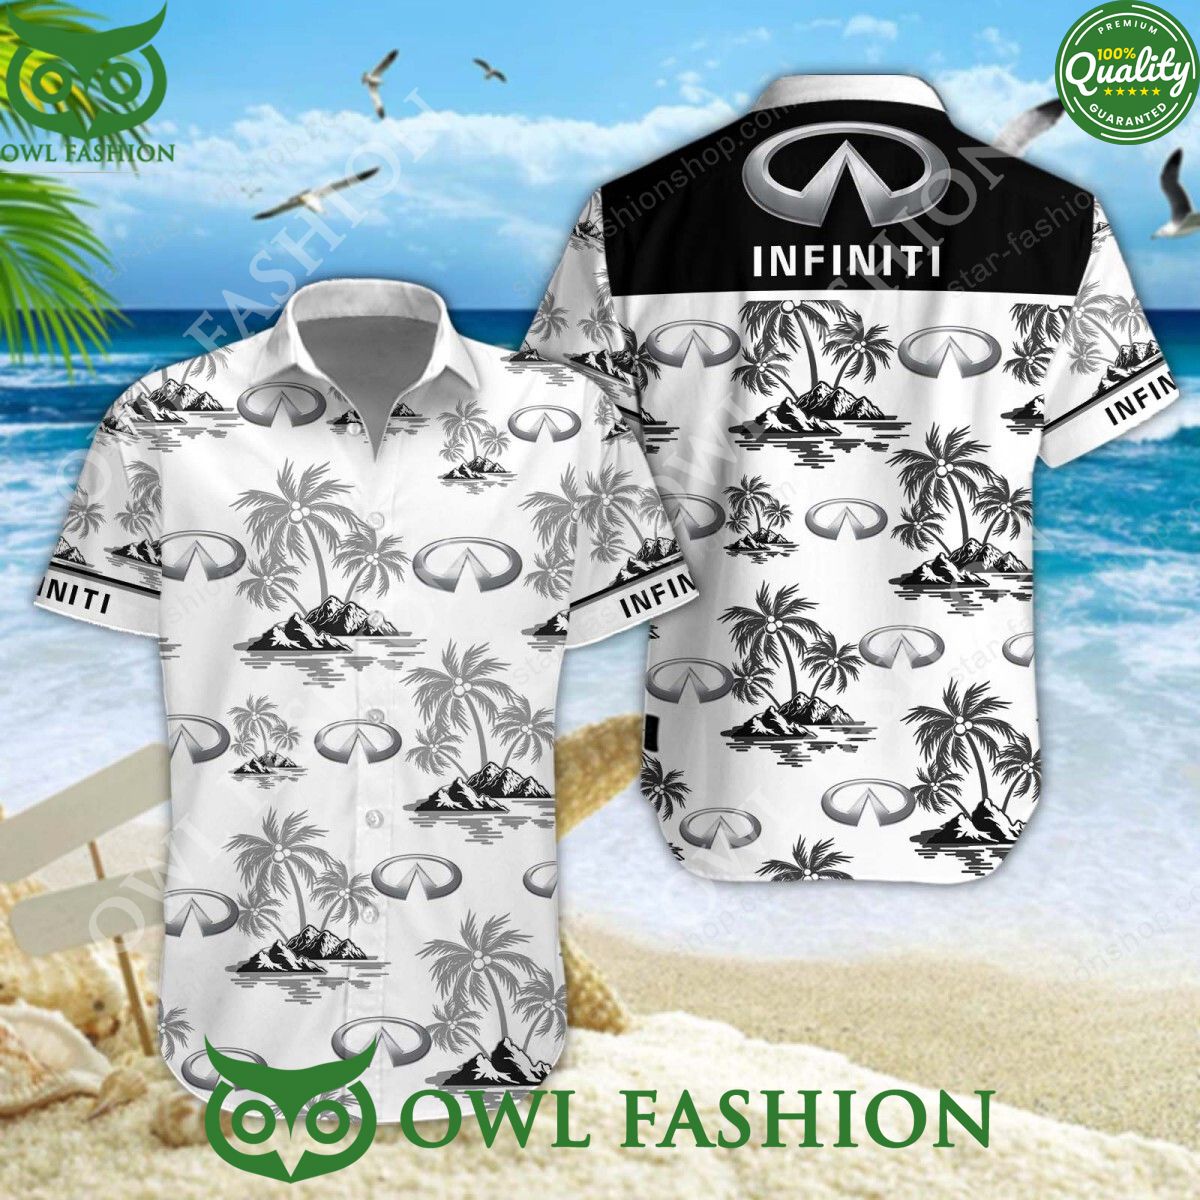 infiniti japanese luxury vehicle hawaiian shirt and short 1 Ehpvq.jpg